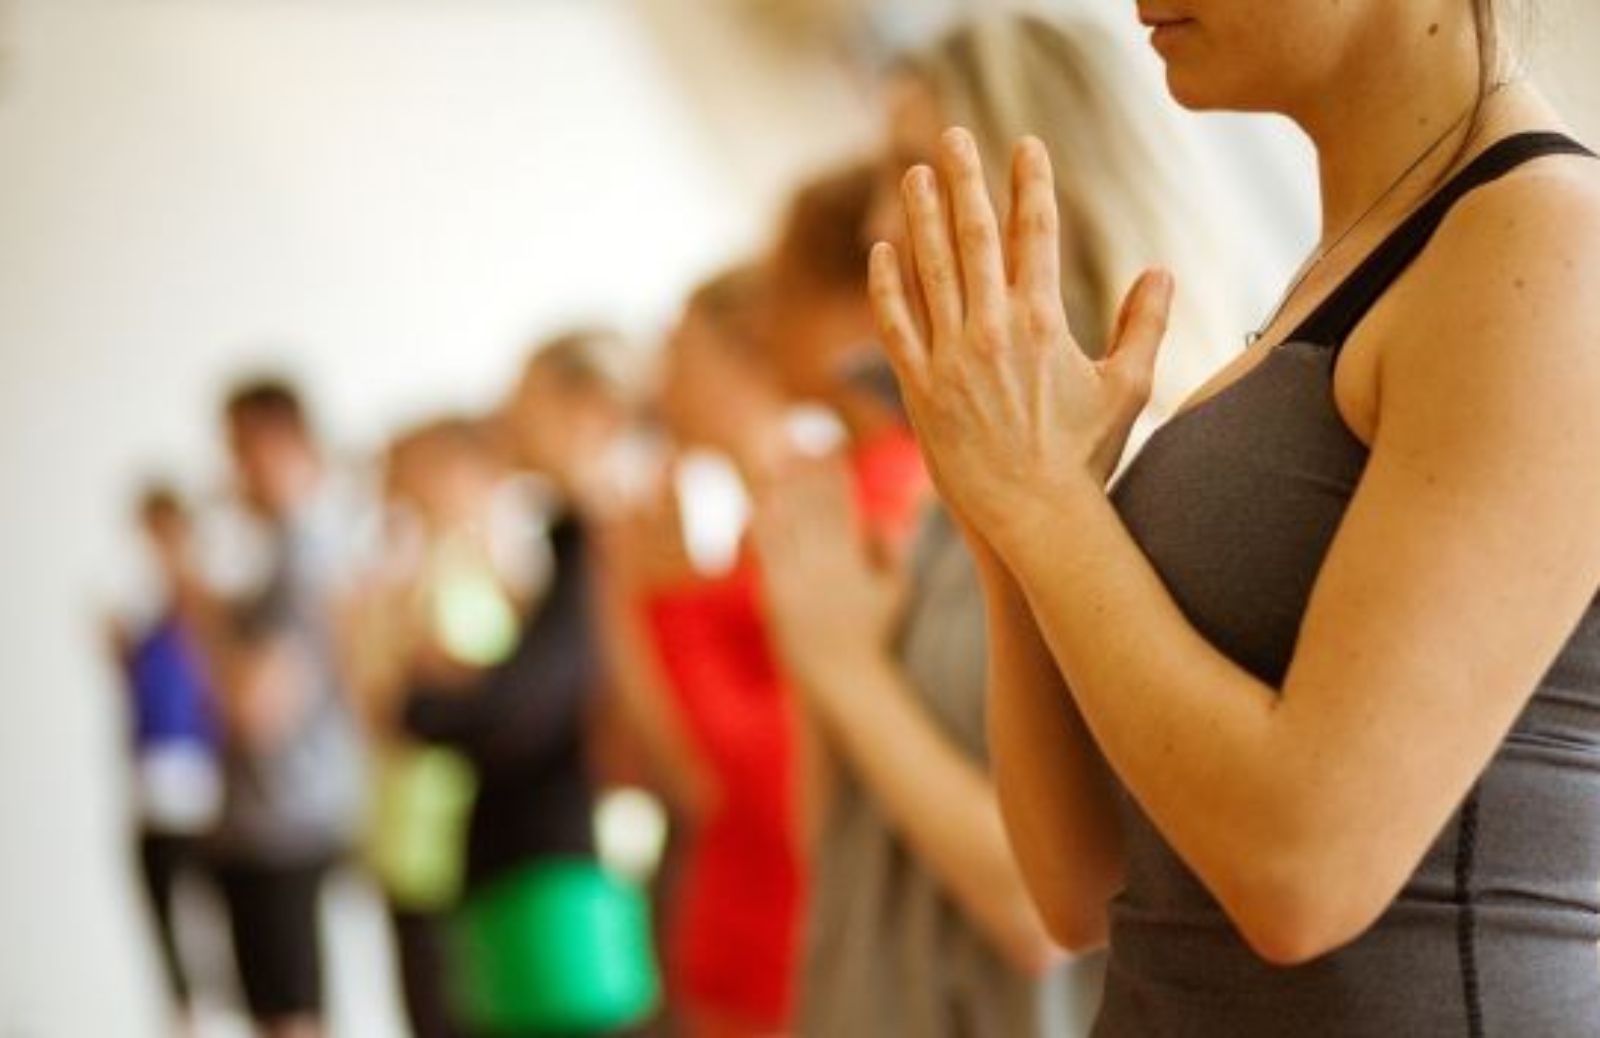 Come imparare a fare yoga: le posizioni di base. Tadasana